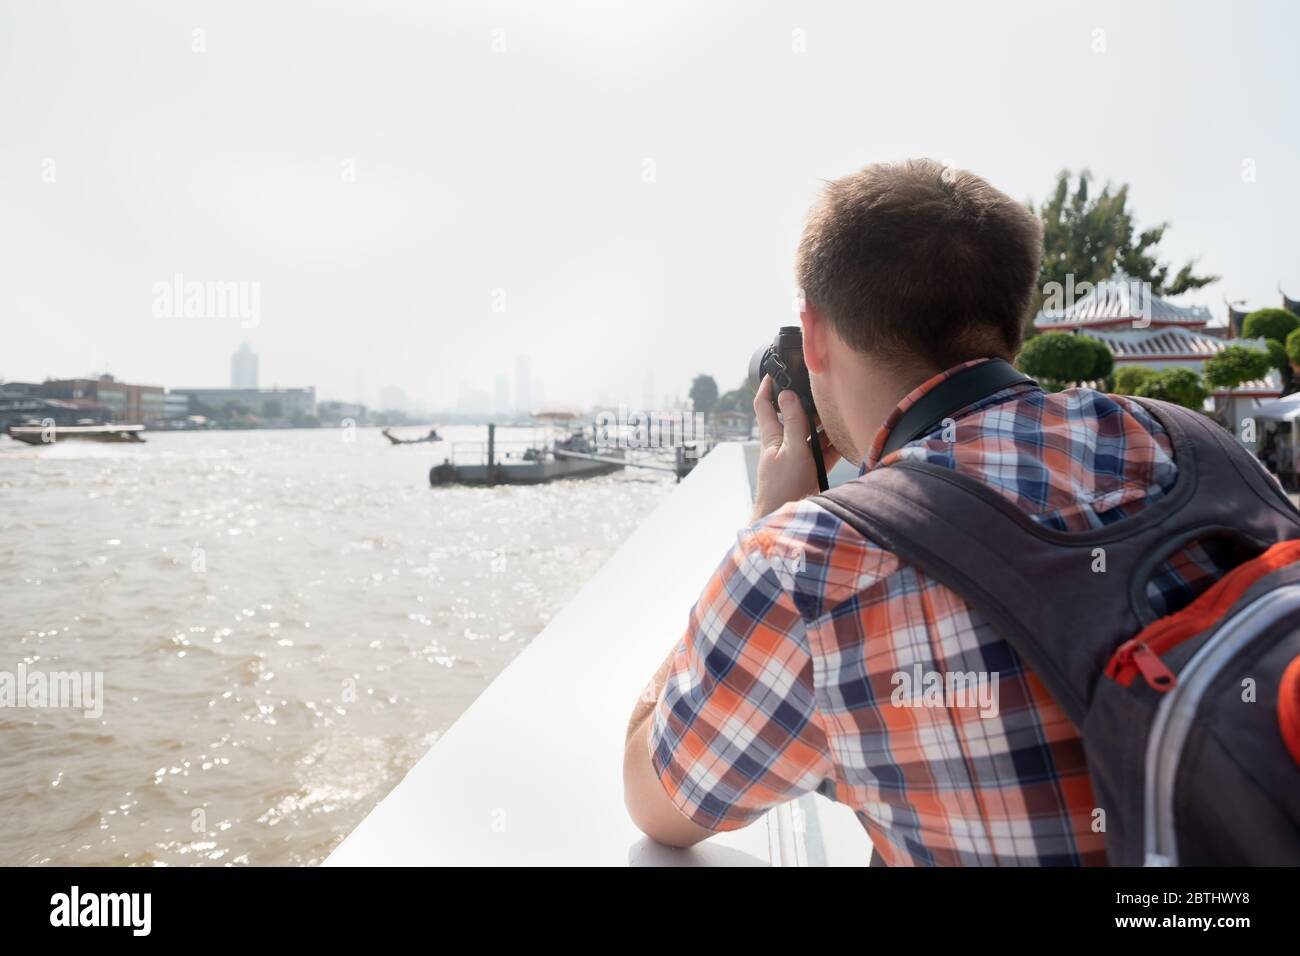 Junger Reisender oder Fotograf geht Sightseeing machen ein Foto von Fluss in Bangkok. Fotografie und Tourismus Konzept. Tourist macht Foto von citysca Stockfoto